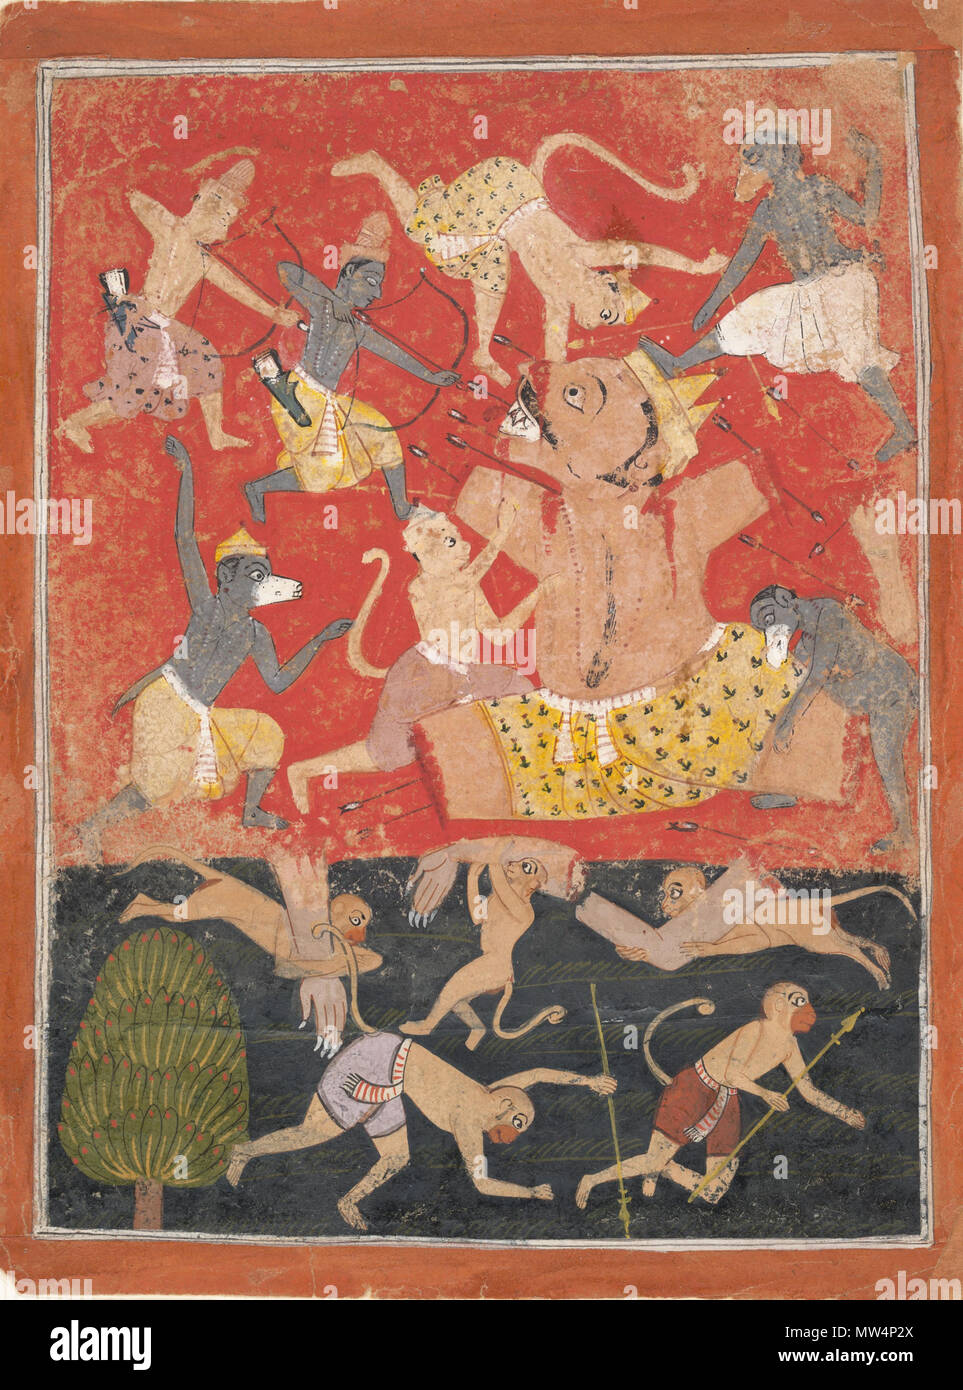 . Inglés: Según el Ramayana, Kumbhakarna gigante, la aterradora y hermano de Ravana, está causando un gran daño al ejército de mono cuando Rama y Lakshmana entró en la batalla. Usando las flechas mágicas de gran poder, Rama rompieron las extremidades Kumbhakarna y llenó su boca con ejes de acero puntiagudo. El pathos de la derrota del demonio es destacado por su cuerpo desmembrado siendo arrastrado por el oso, el mono y guerreros. En comparación con la representación de Mughal el despertar del demonio Kumbhakarna, que muestra el gigante dormido, esta Malwa retrato se centra en su muerte violenta y sangrienta. Th Foto de stock